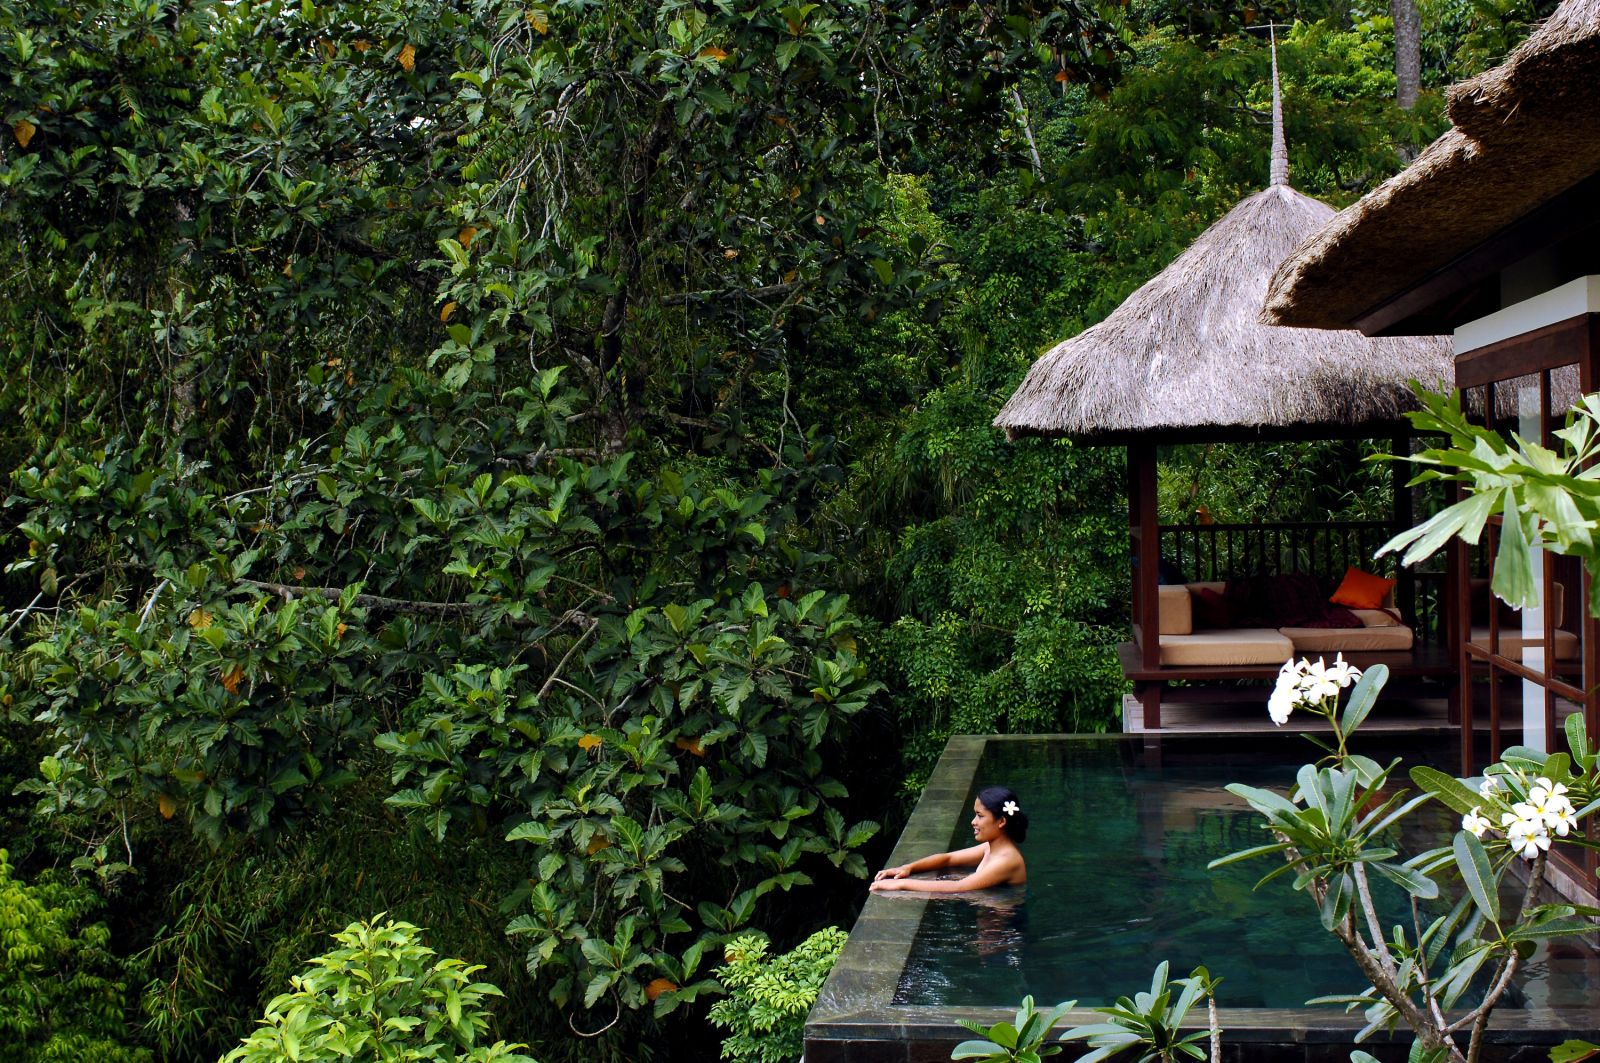 Hanging Gardens of Bali ★★★★★